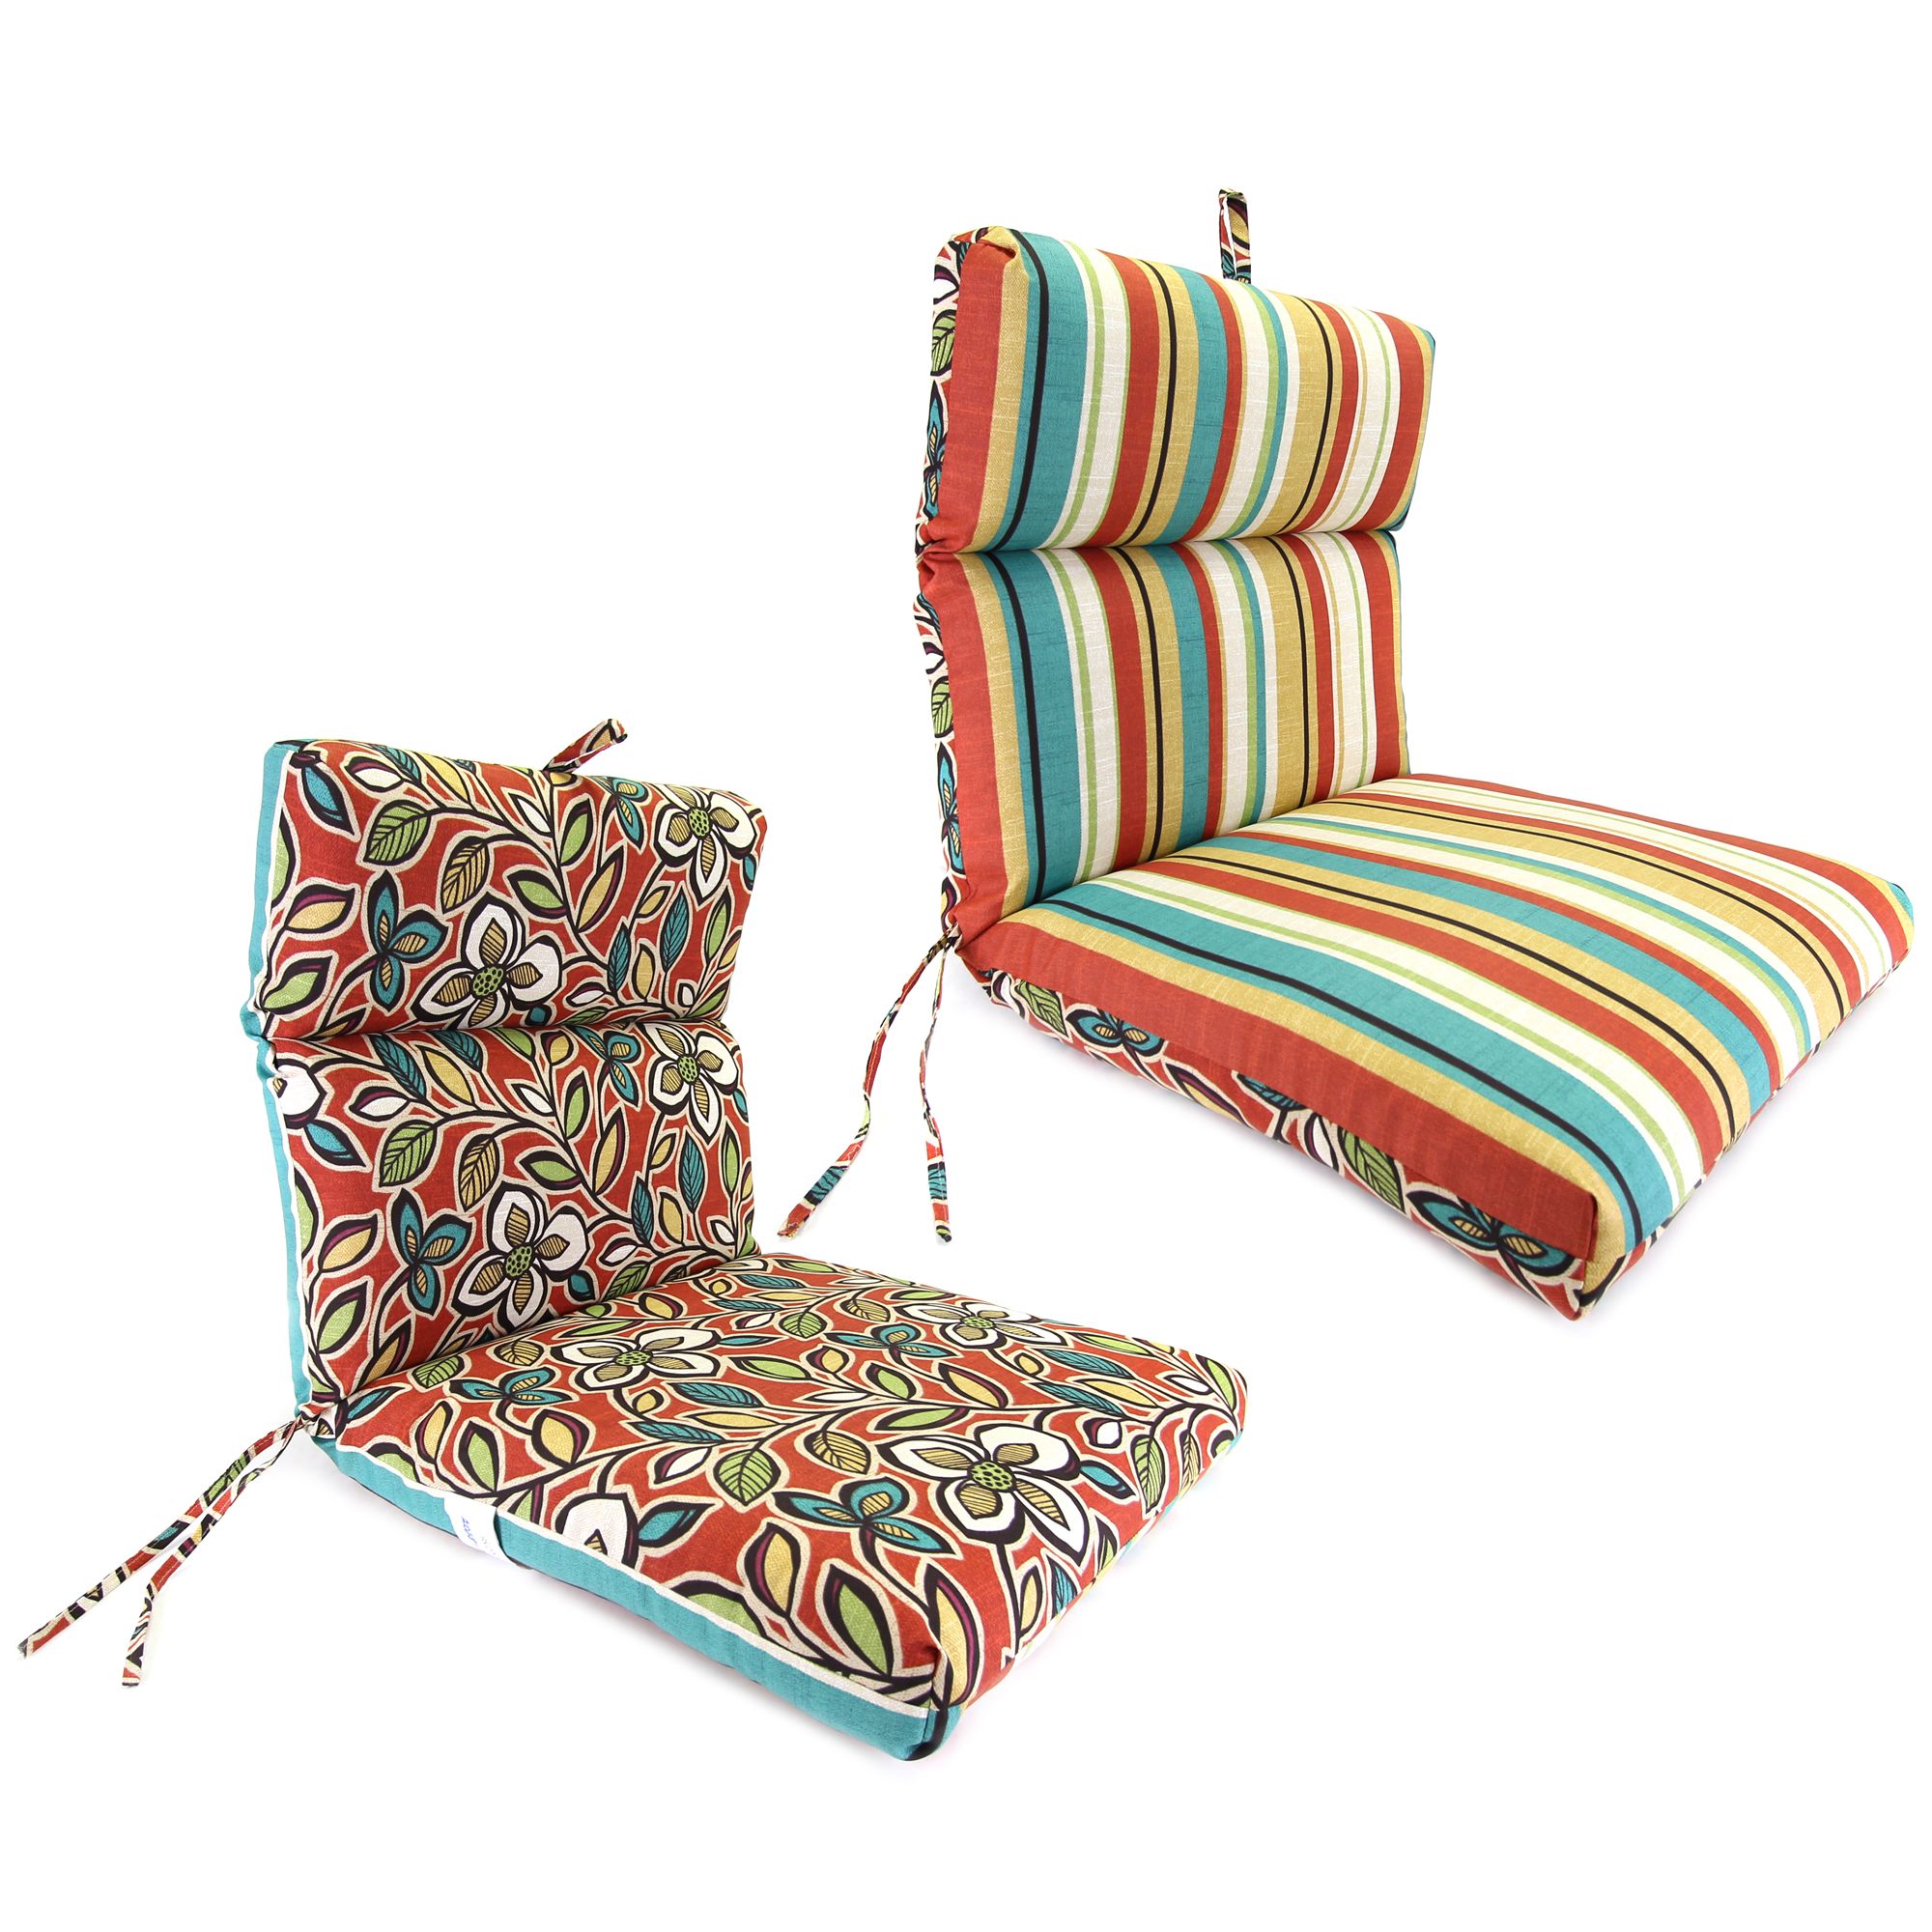 Ethan/Wyken Stripe Scarlet French Edge Chair Cushion